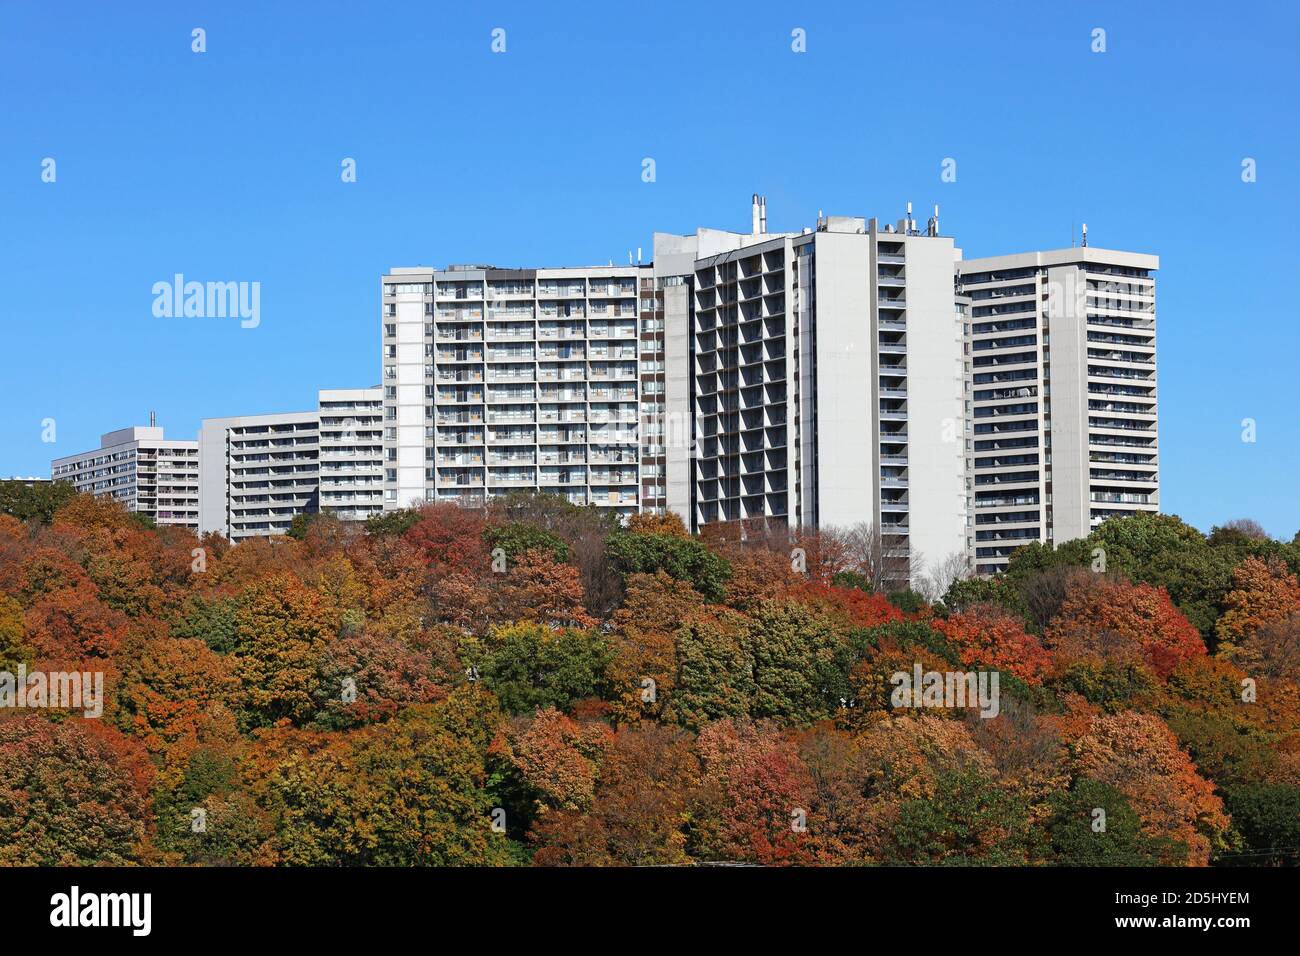 Grands immeubles d'appartements entourés d'arbres aux couleurs de l'automne Banque D'Images